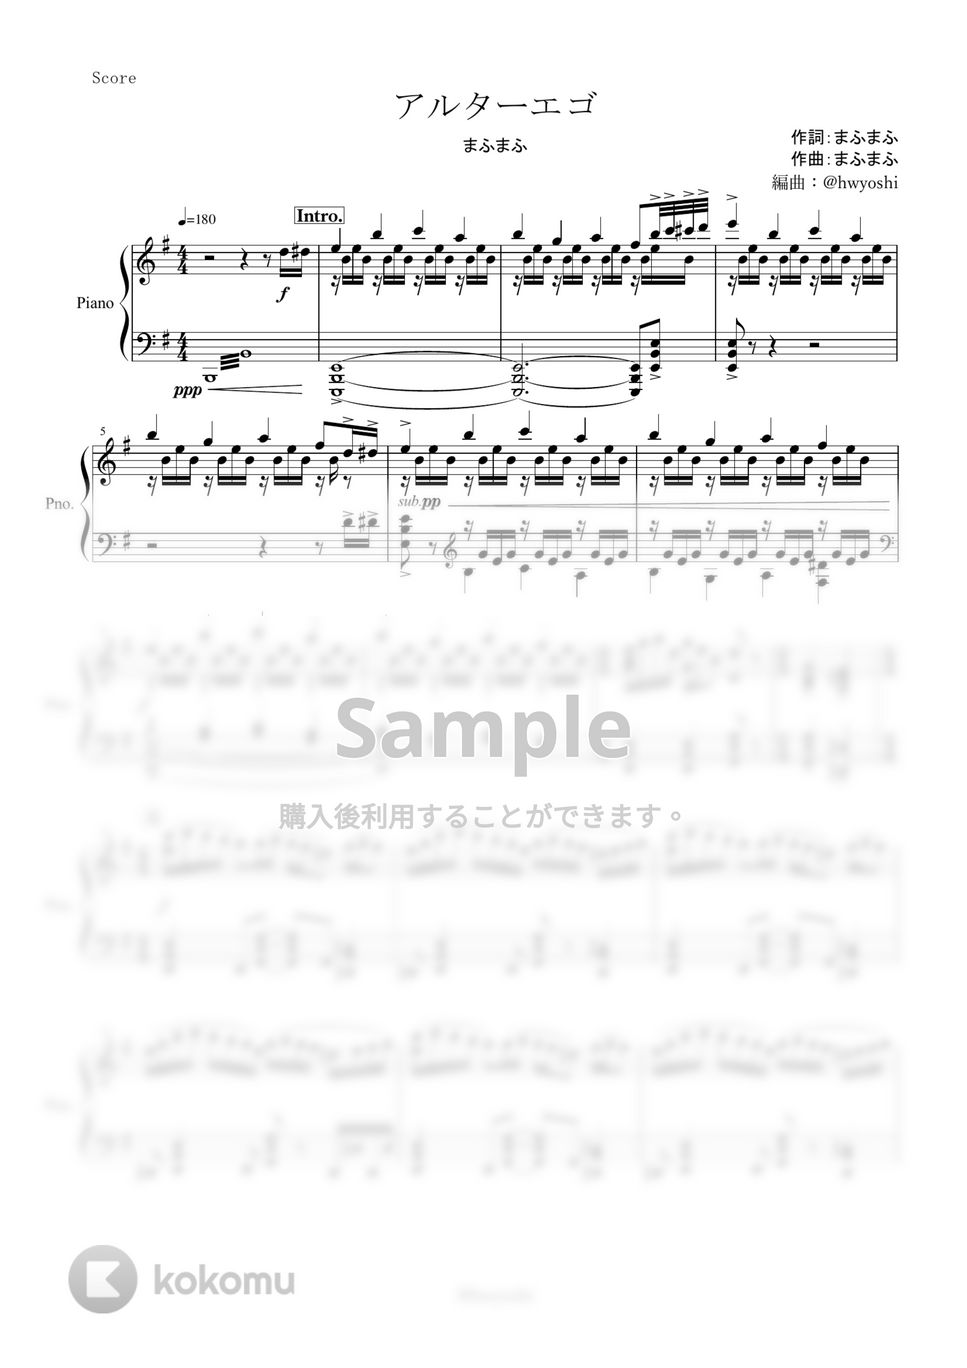 まふまふ - アルターエゴ (ピアノ楽譜/全８ページ) by yoshi